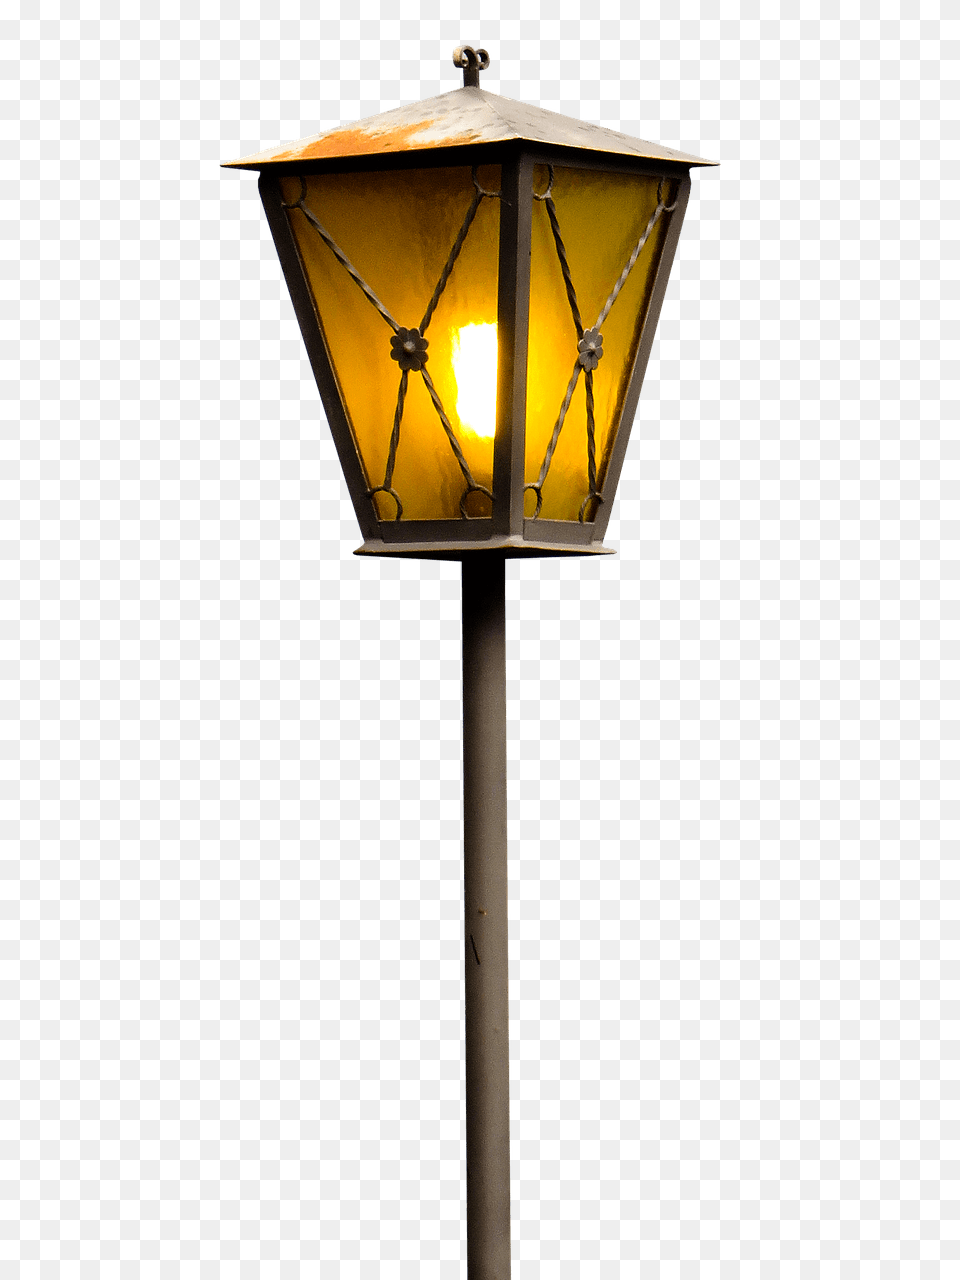 Burning Street Lantern Transparent, Lamp, Lampshade, Mailbox Free Png Download